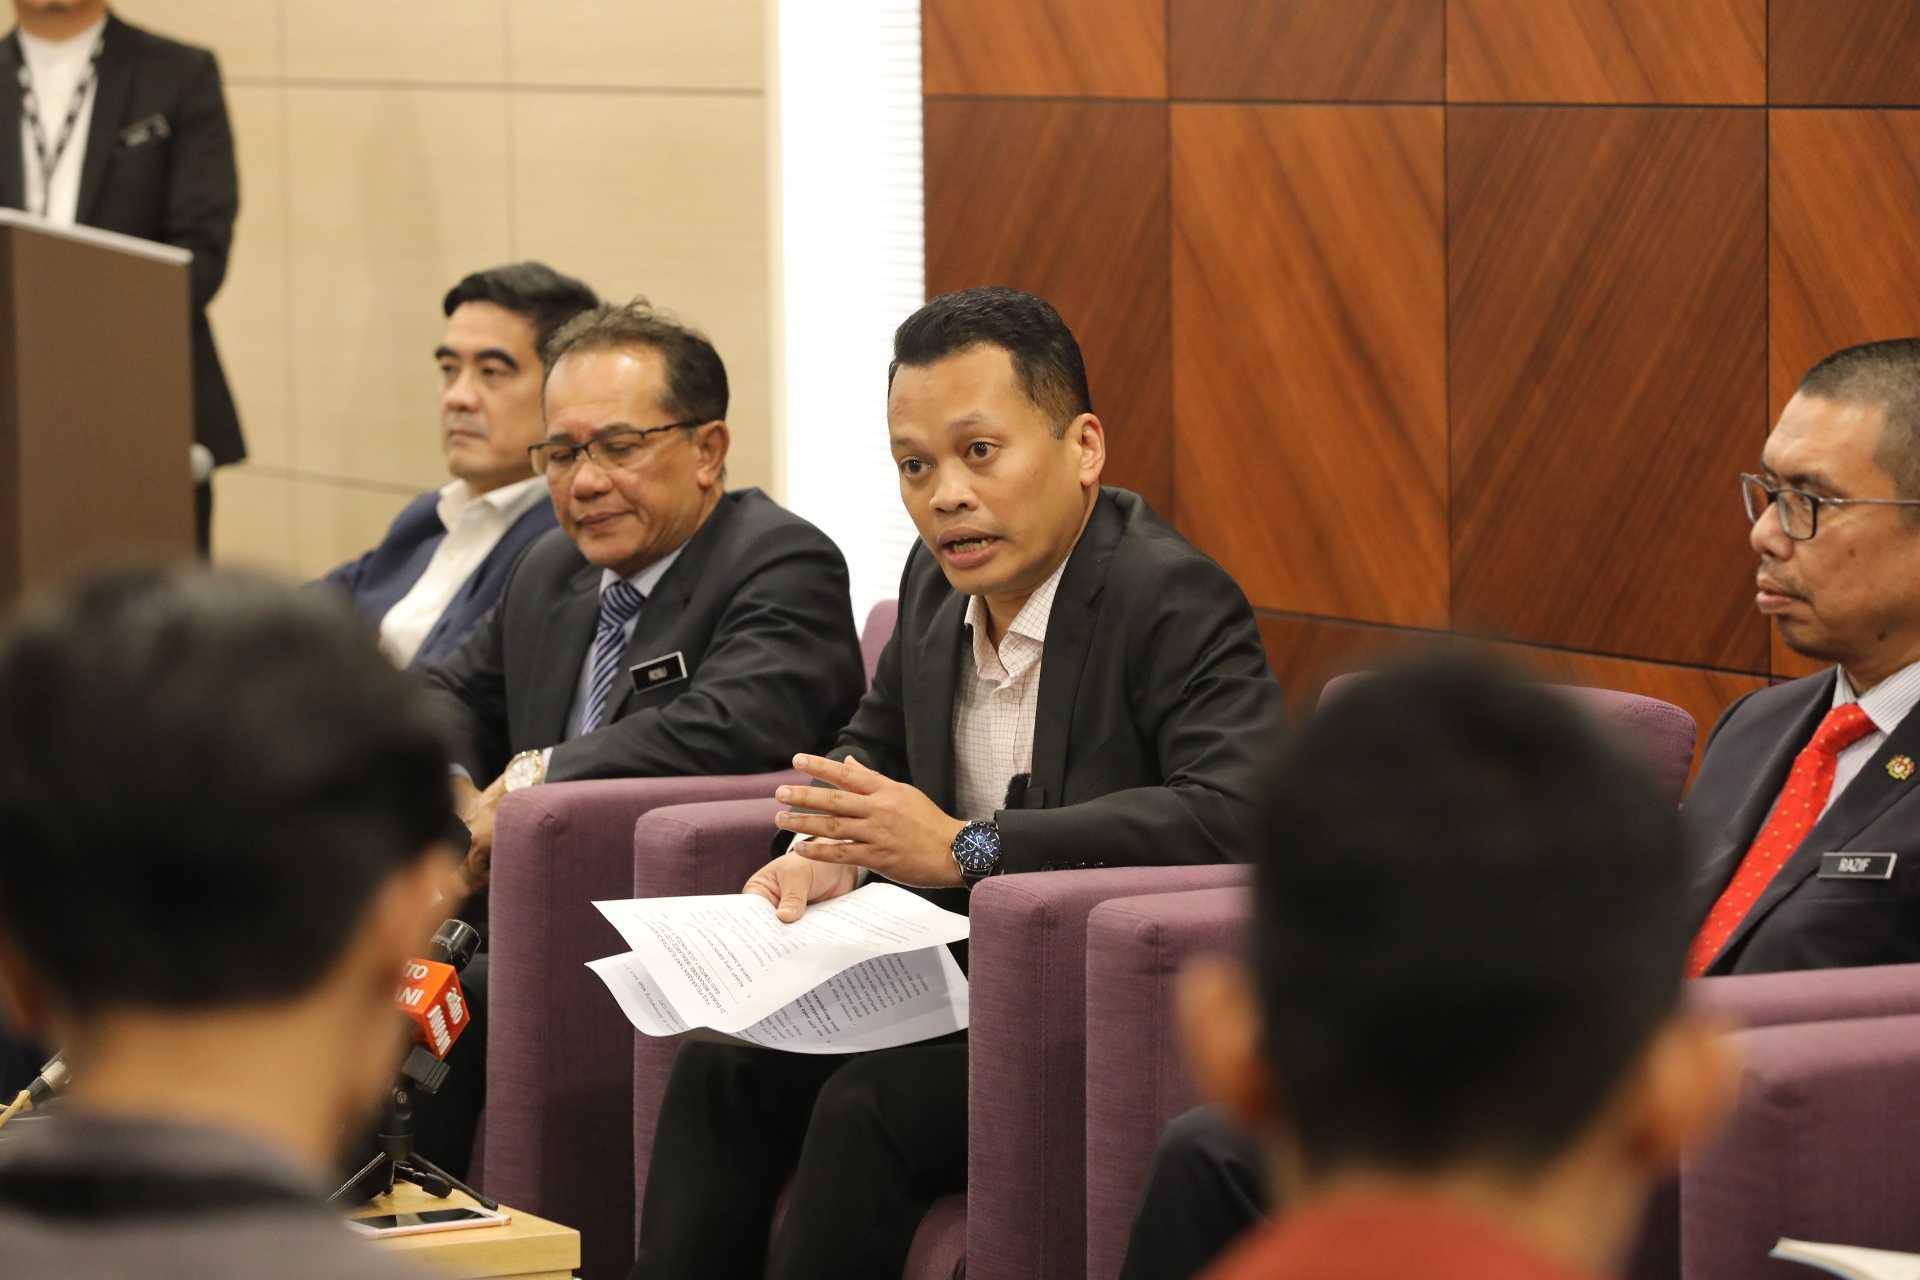 Menteri Sumber Asli, Alam Sekitar dan Perubahan Iklim Nik Nazmi Nik Ahmad (tengah) pada sidang media di Putrajaya. Gambar: Kementerian Sumber Asli, Alam Sekitar dan Perubahan Iklim